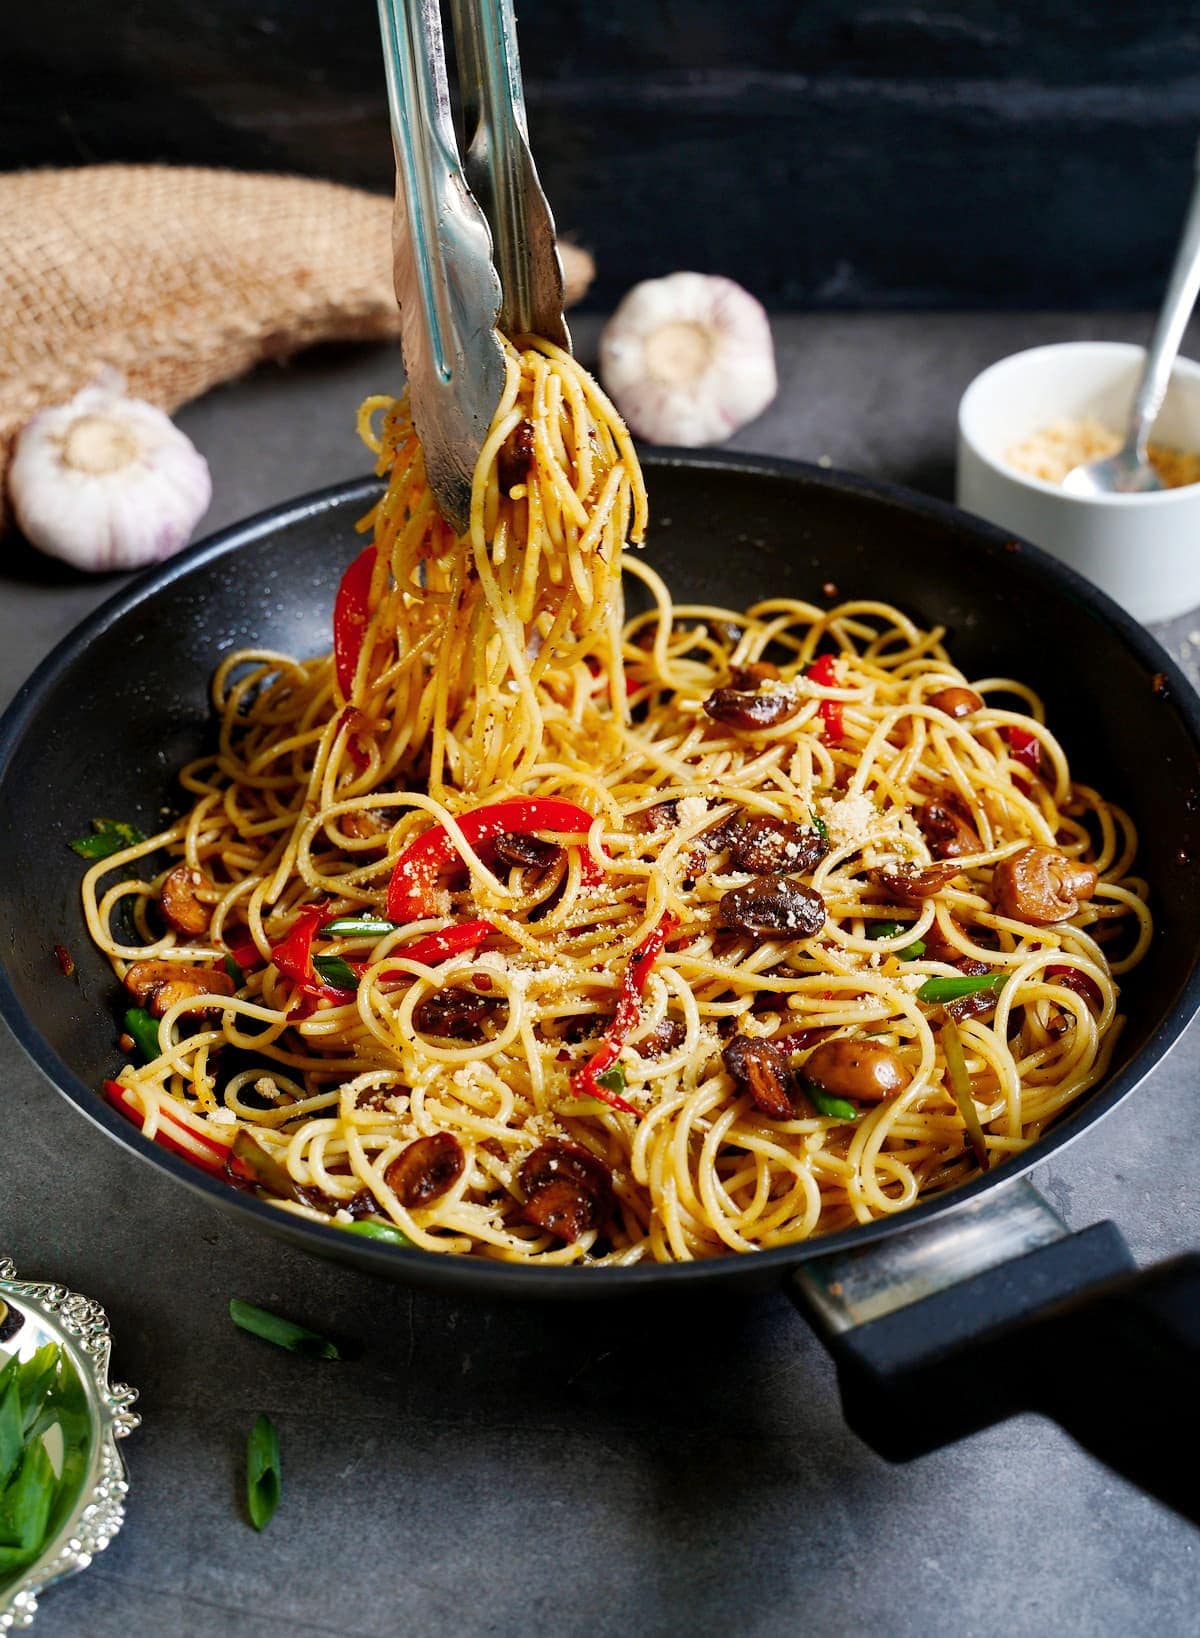 Knoblauch-Spaghetti in schwarzer Pfanne mit Gemüse und Küchenzange